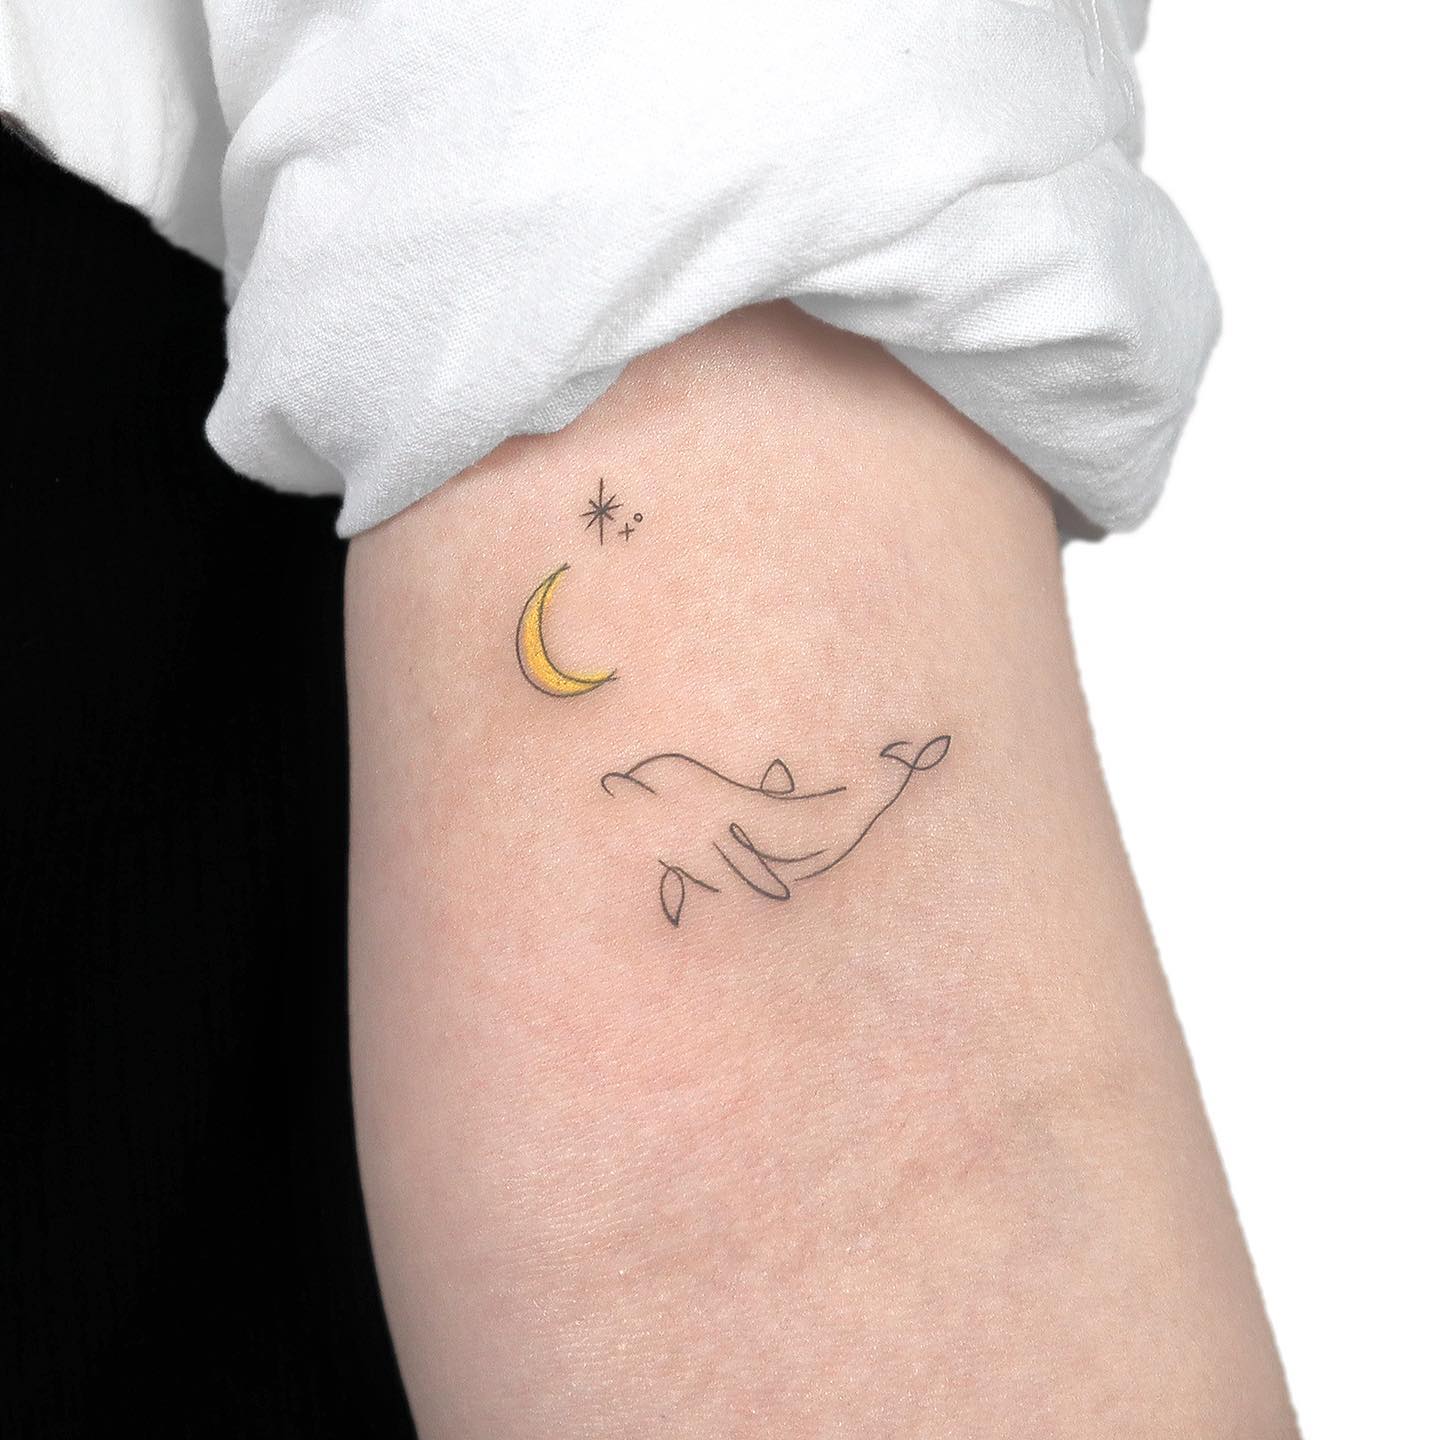 Small dolphin tattoo by gigi tattooer